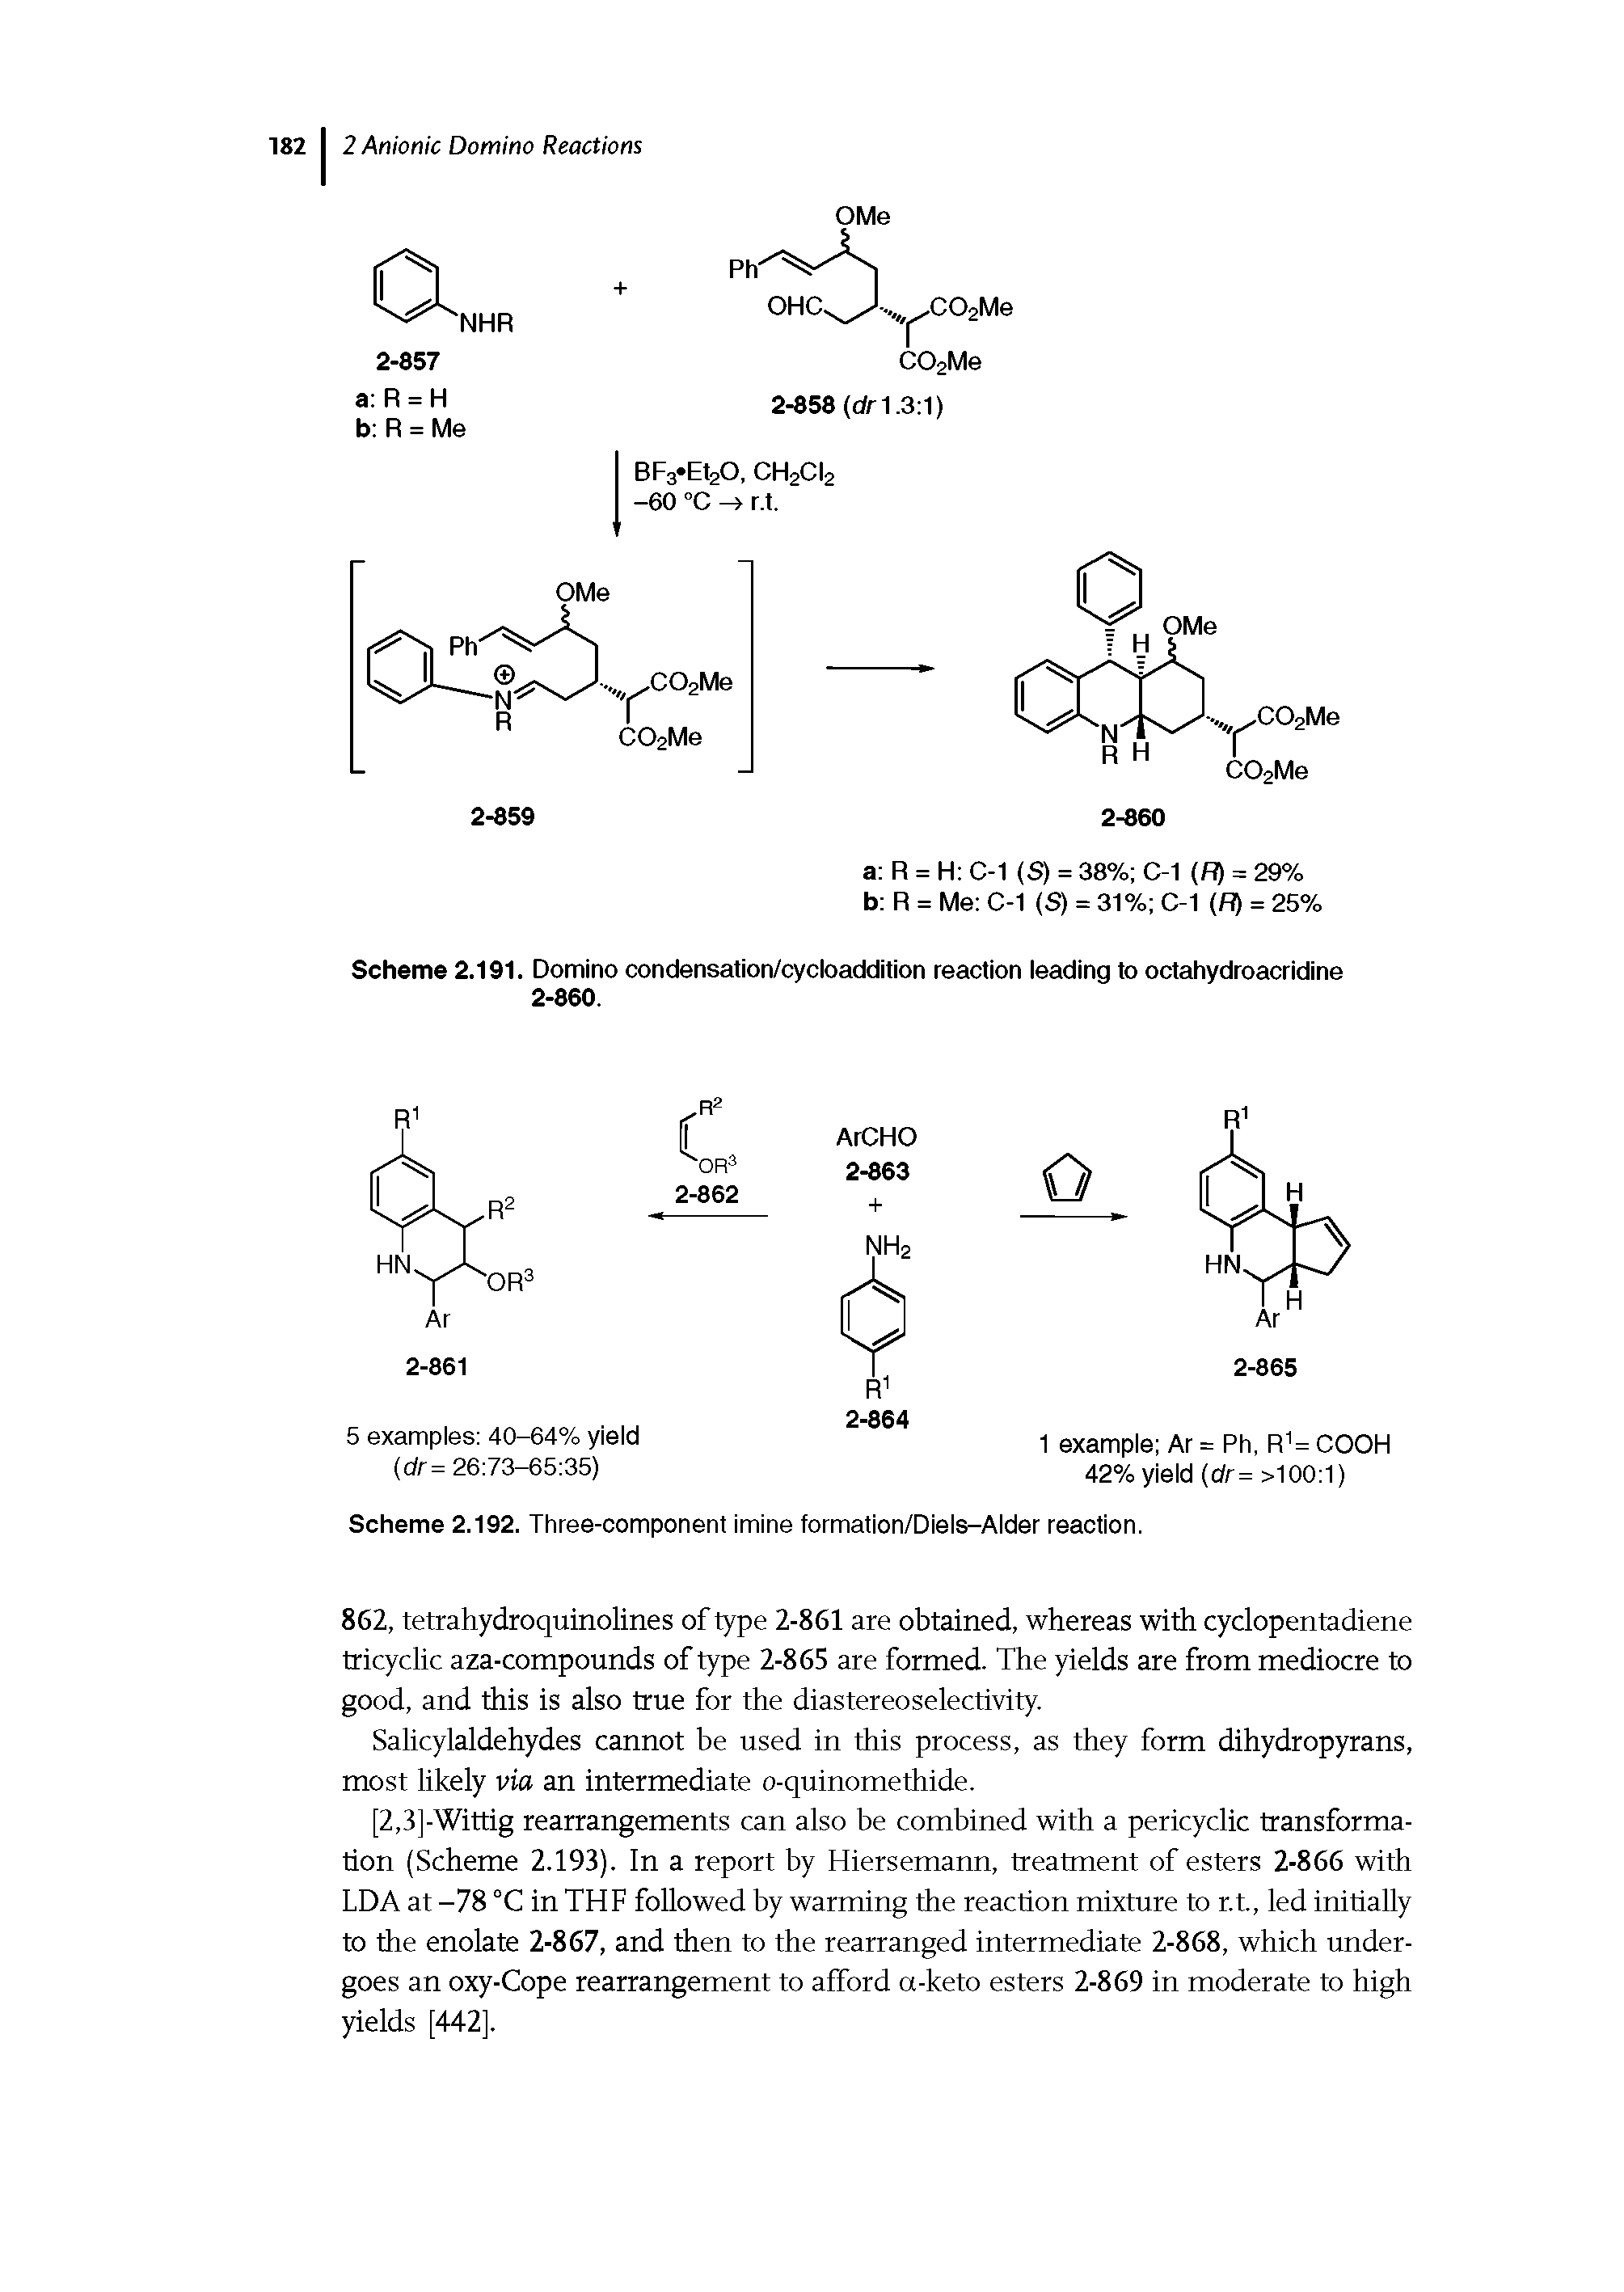 Scheme 2.192. Three-component imine formation/Diels-Alder reaction.